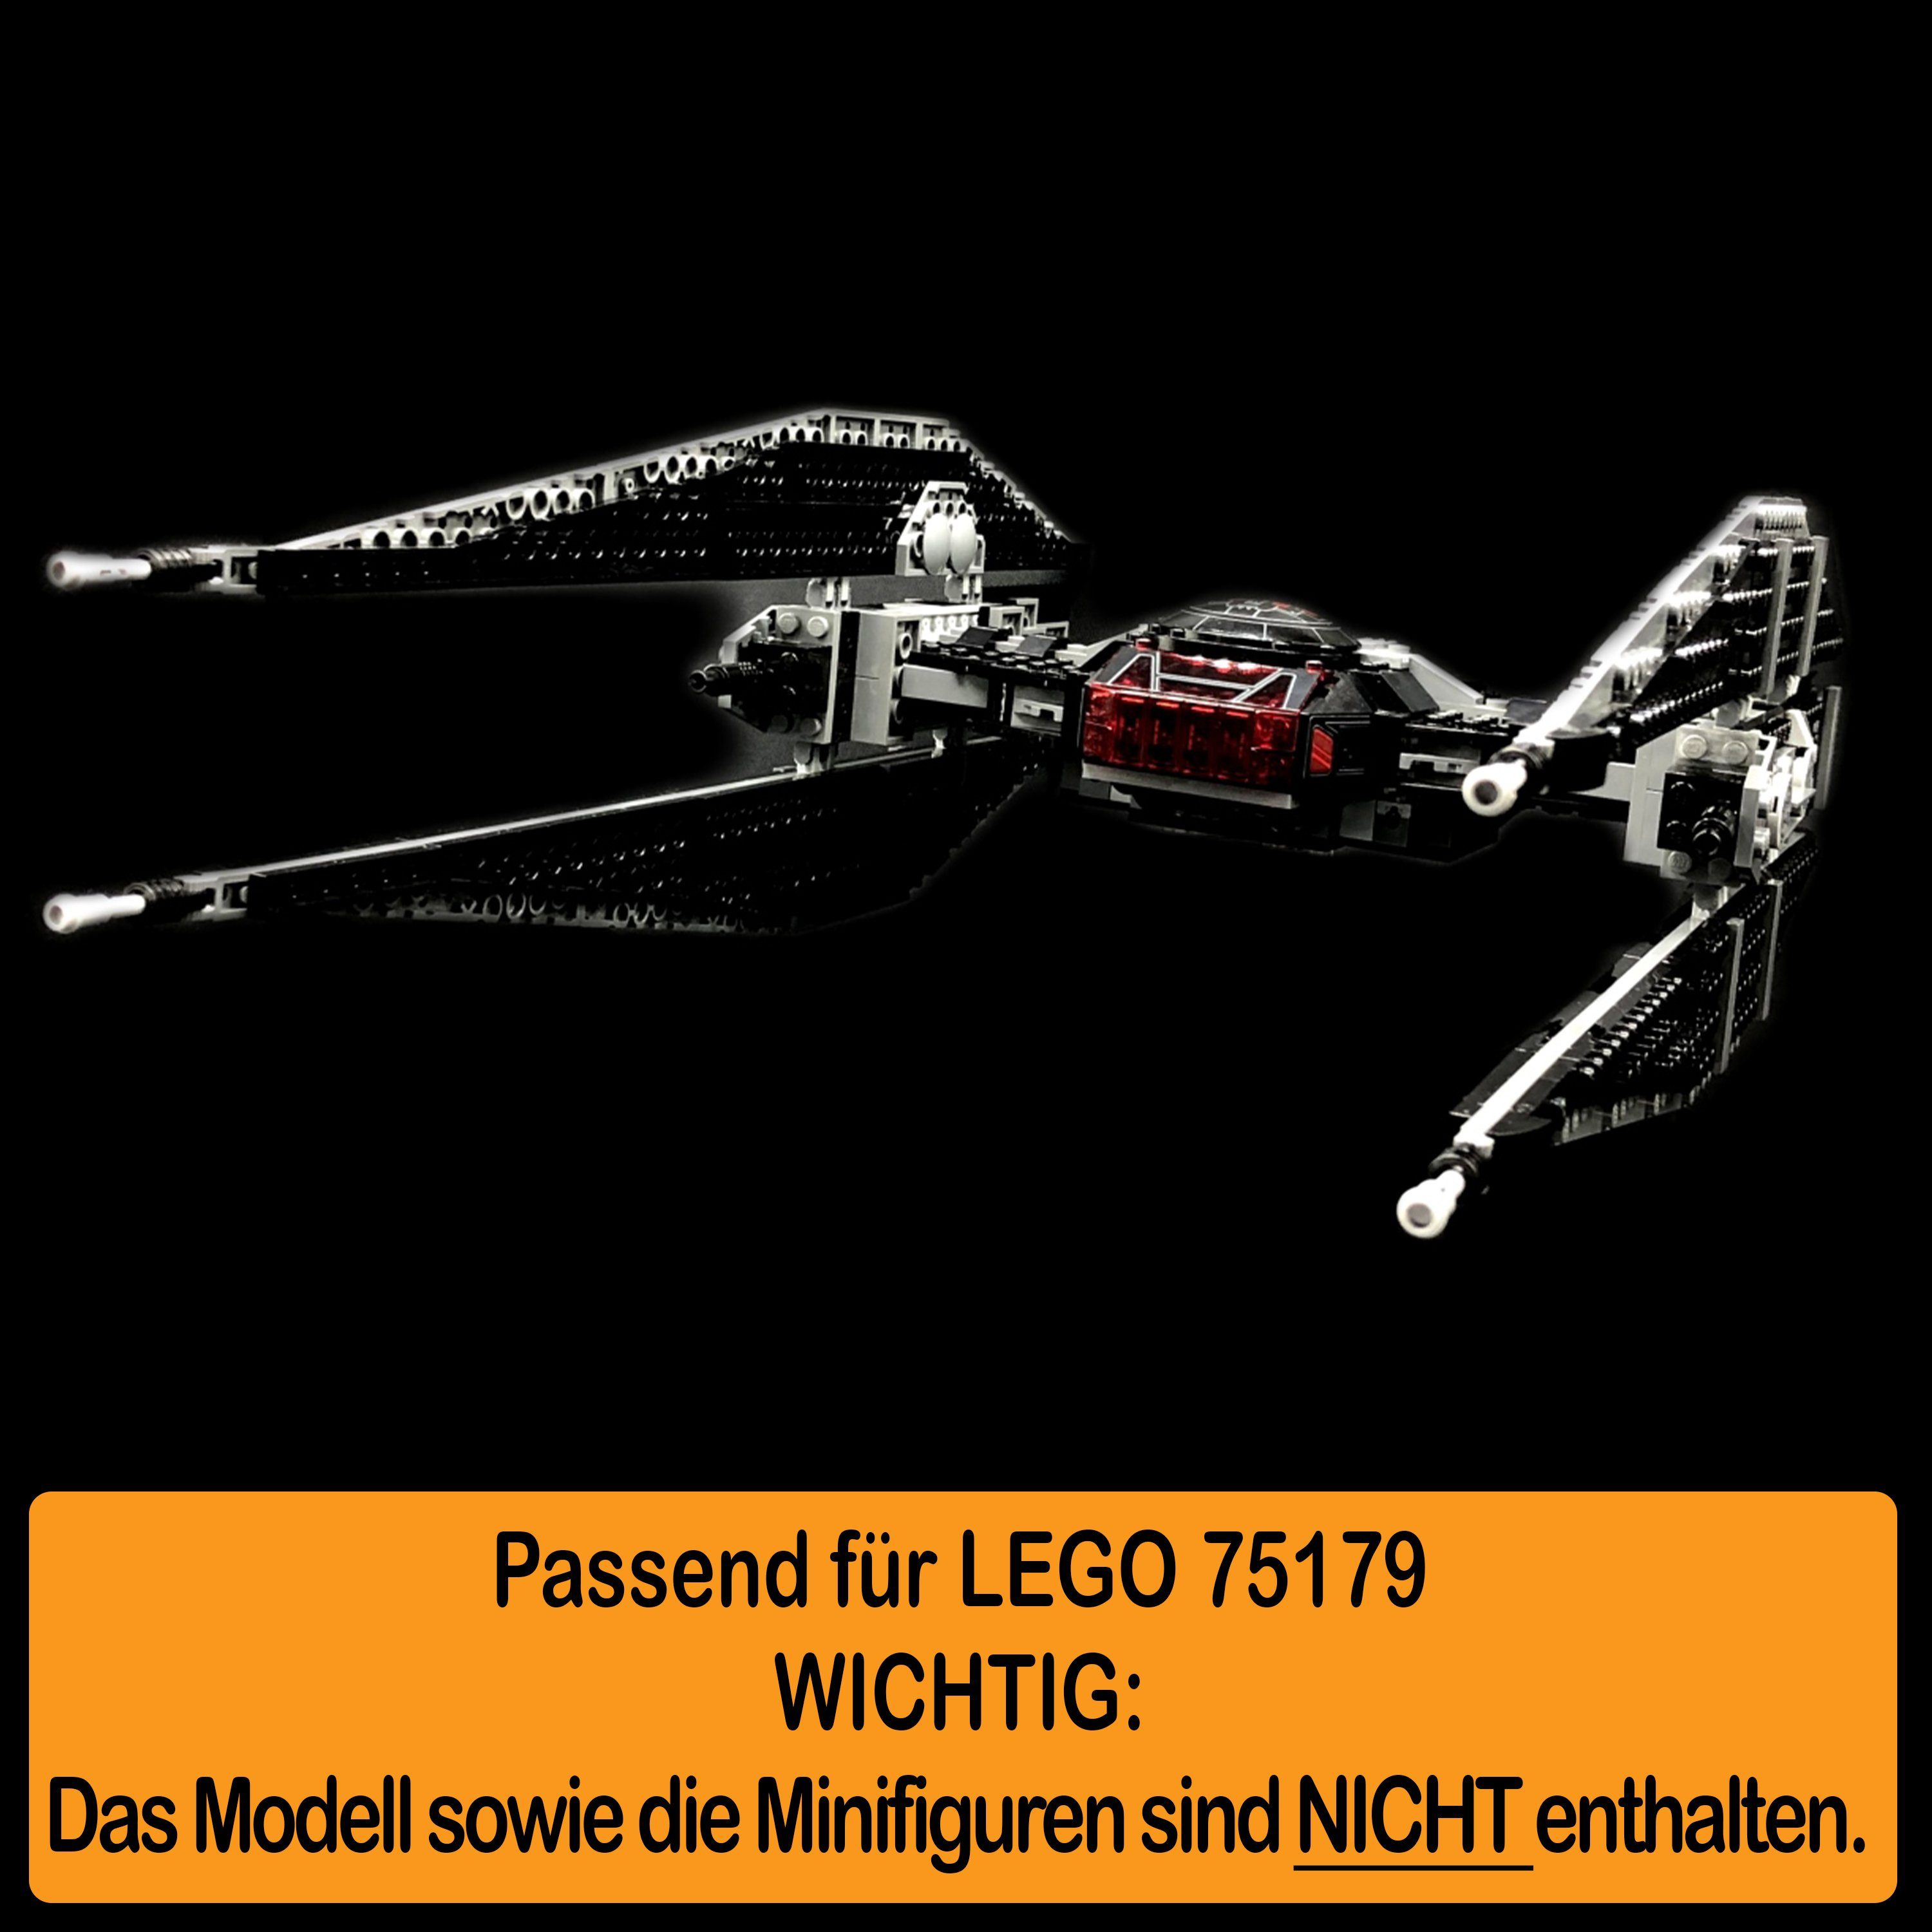 TIE 75179 Winkel Germany Ren´s Positionen selbst Made Fighter 100% AREA17 Display zum Kylo einstellbar, LEGO und Acryl (verschiedene für zusammenbauen), Stand in Standfuß